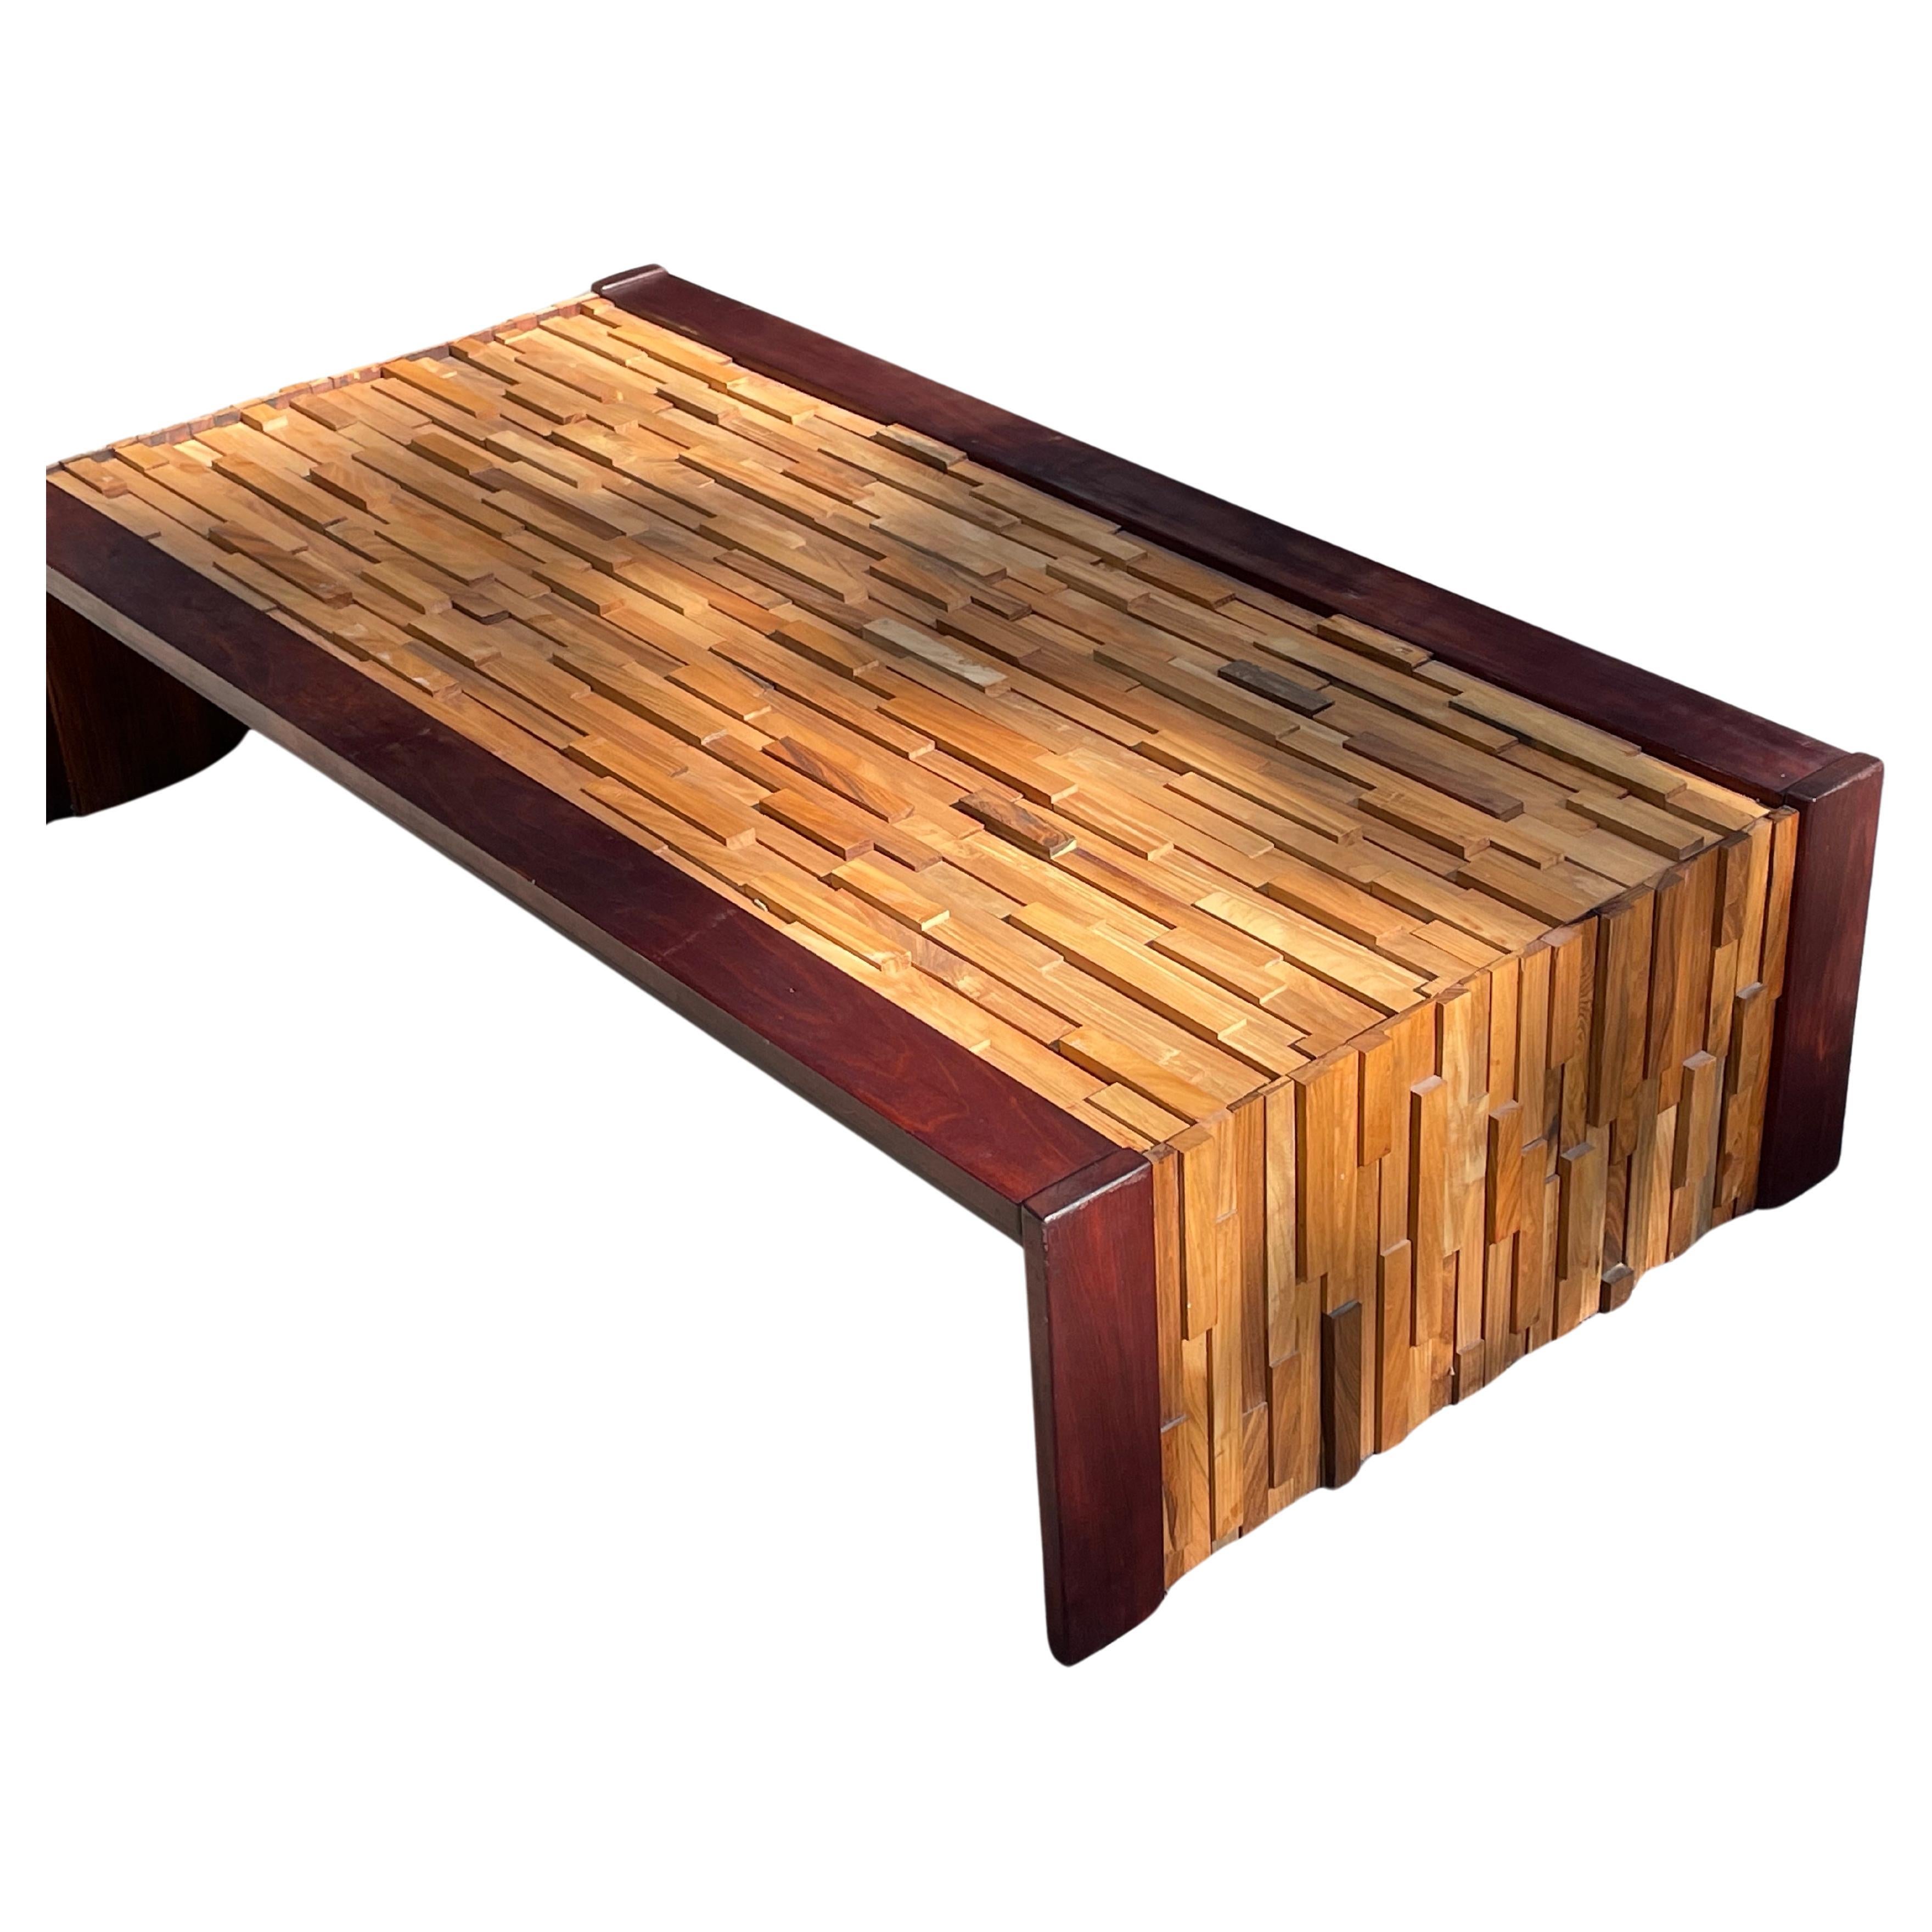 Cette table basse emblématique est l'une des conceptions les plus célèbres de Lafer. Elle a été fabriquée à partir de divers bois durs tropicaux, dont le palissandre, le teck et le jacaranda, dans des hauteurs et des longueurs différentes pour créer